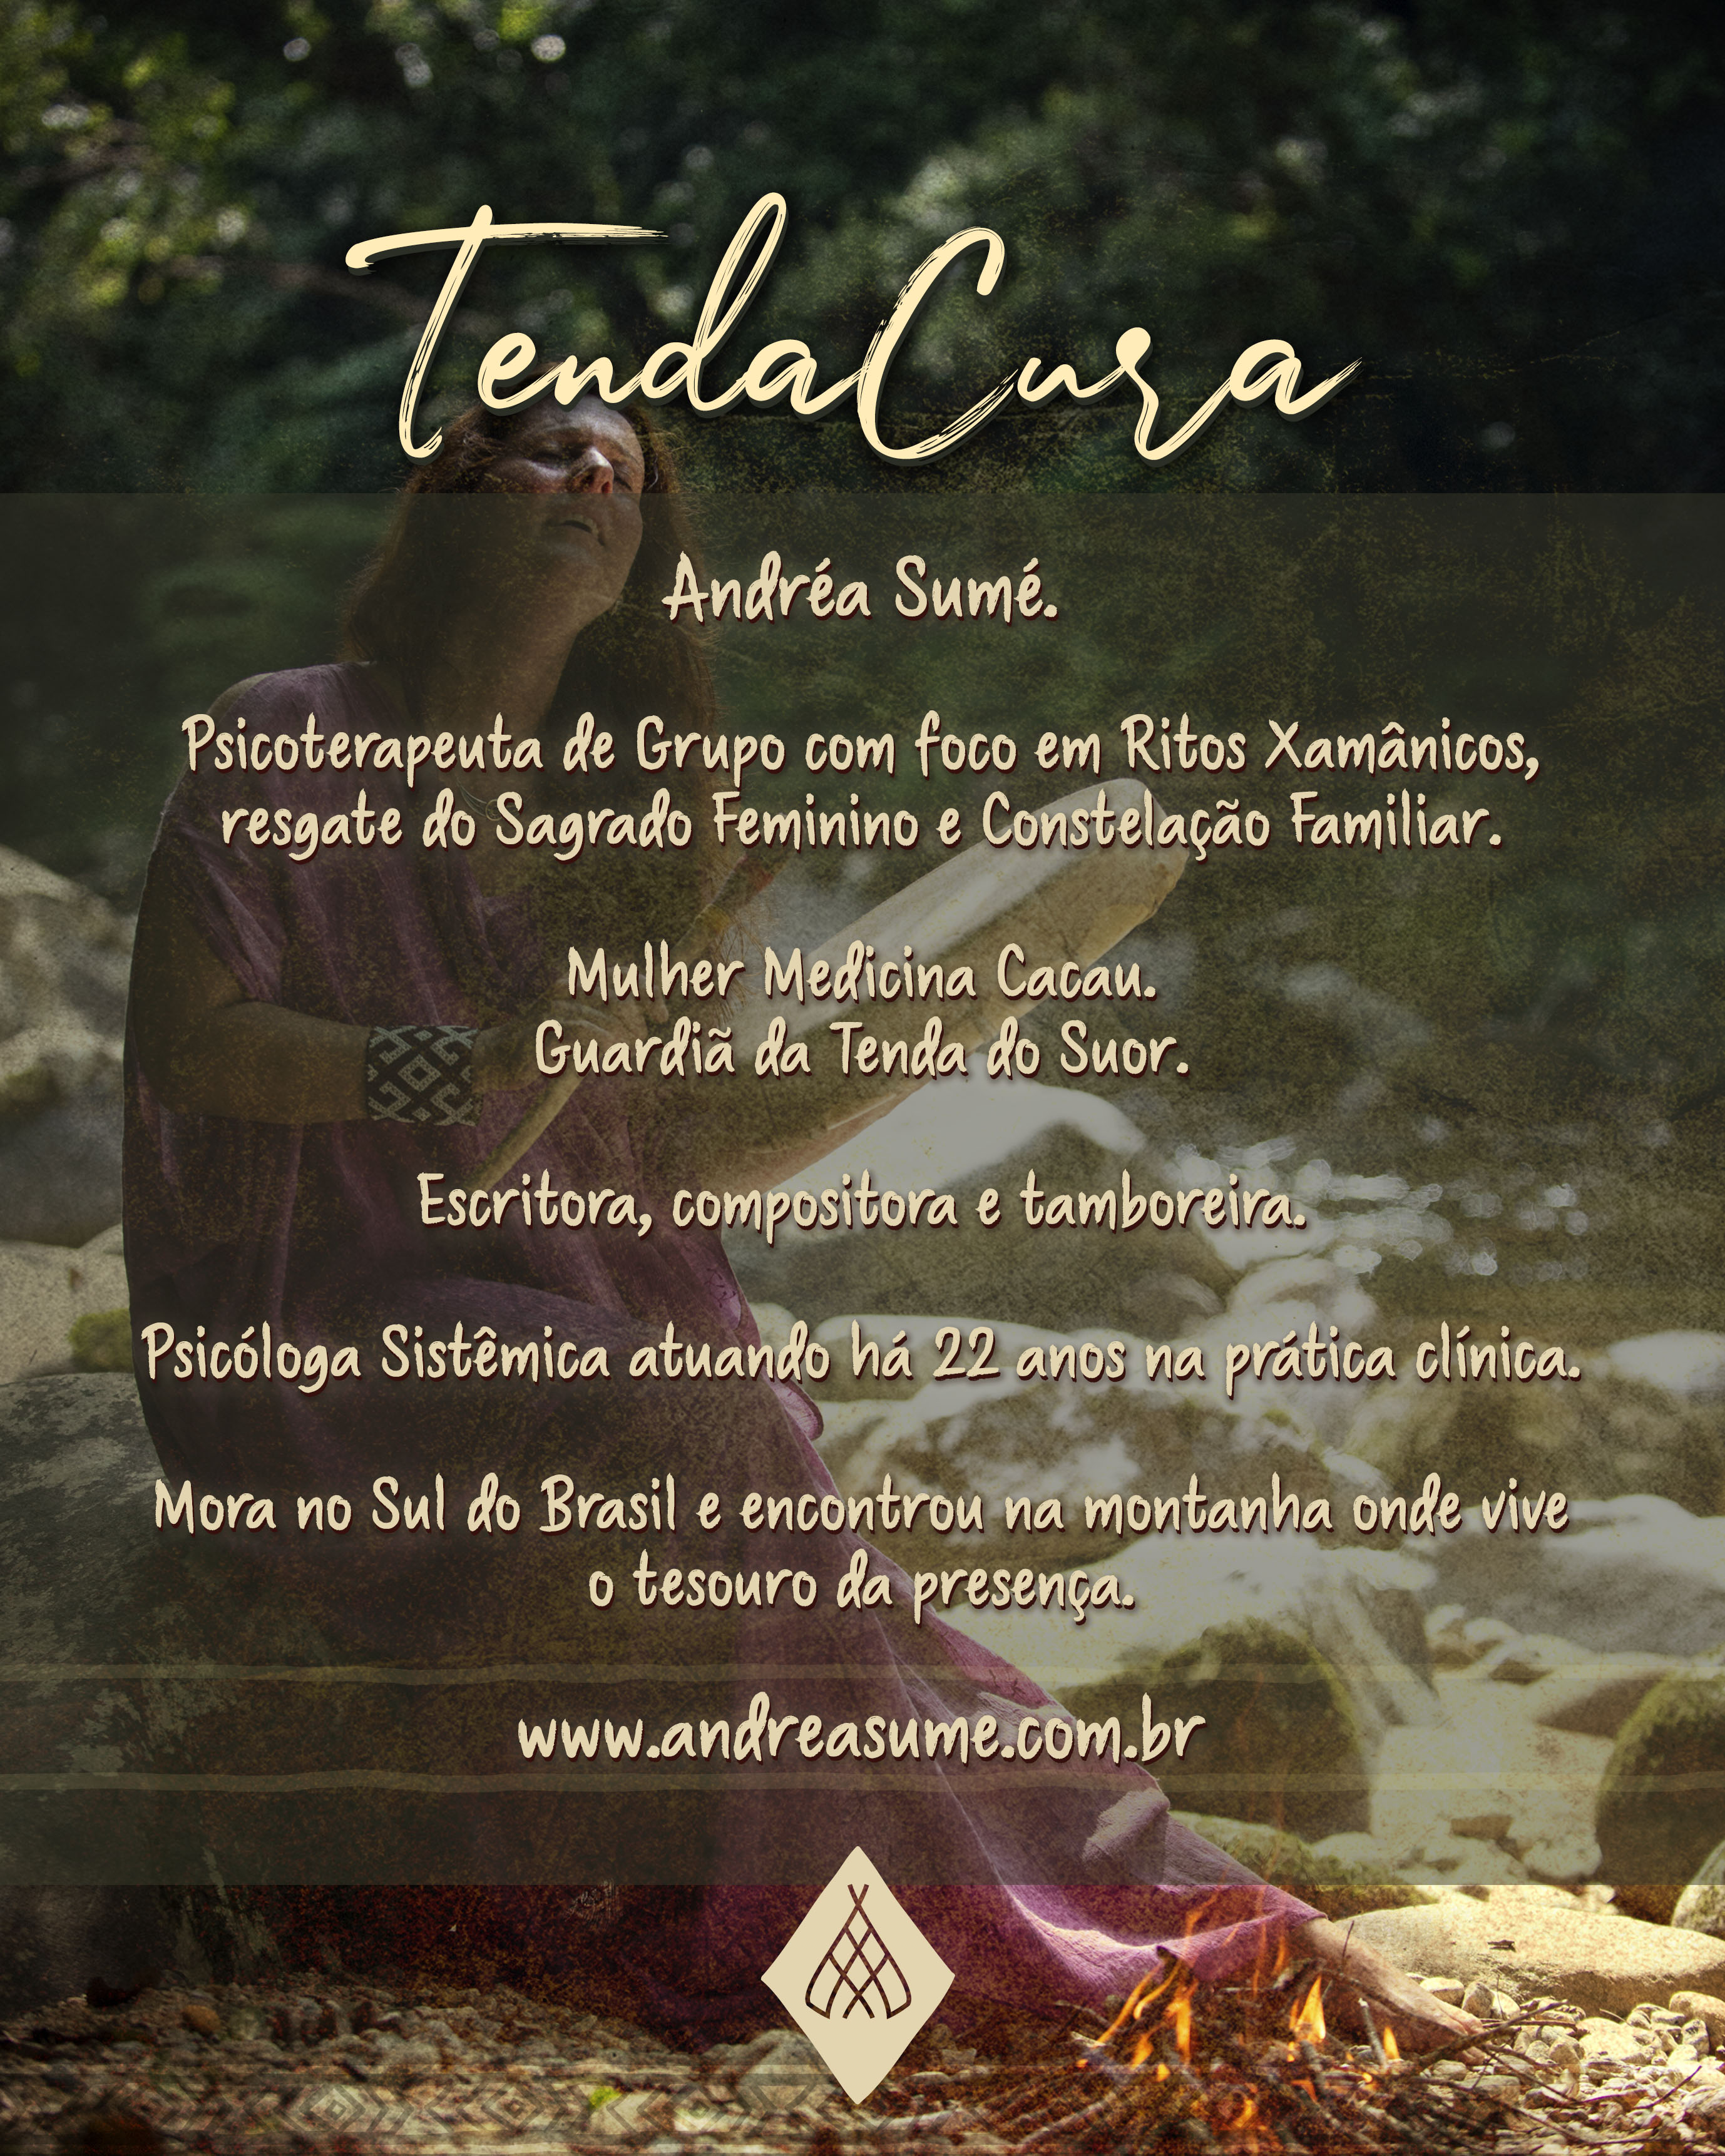 Tenda Cura_09 (1)